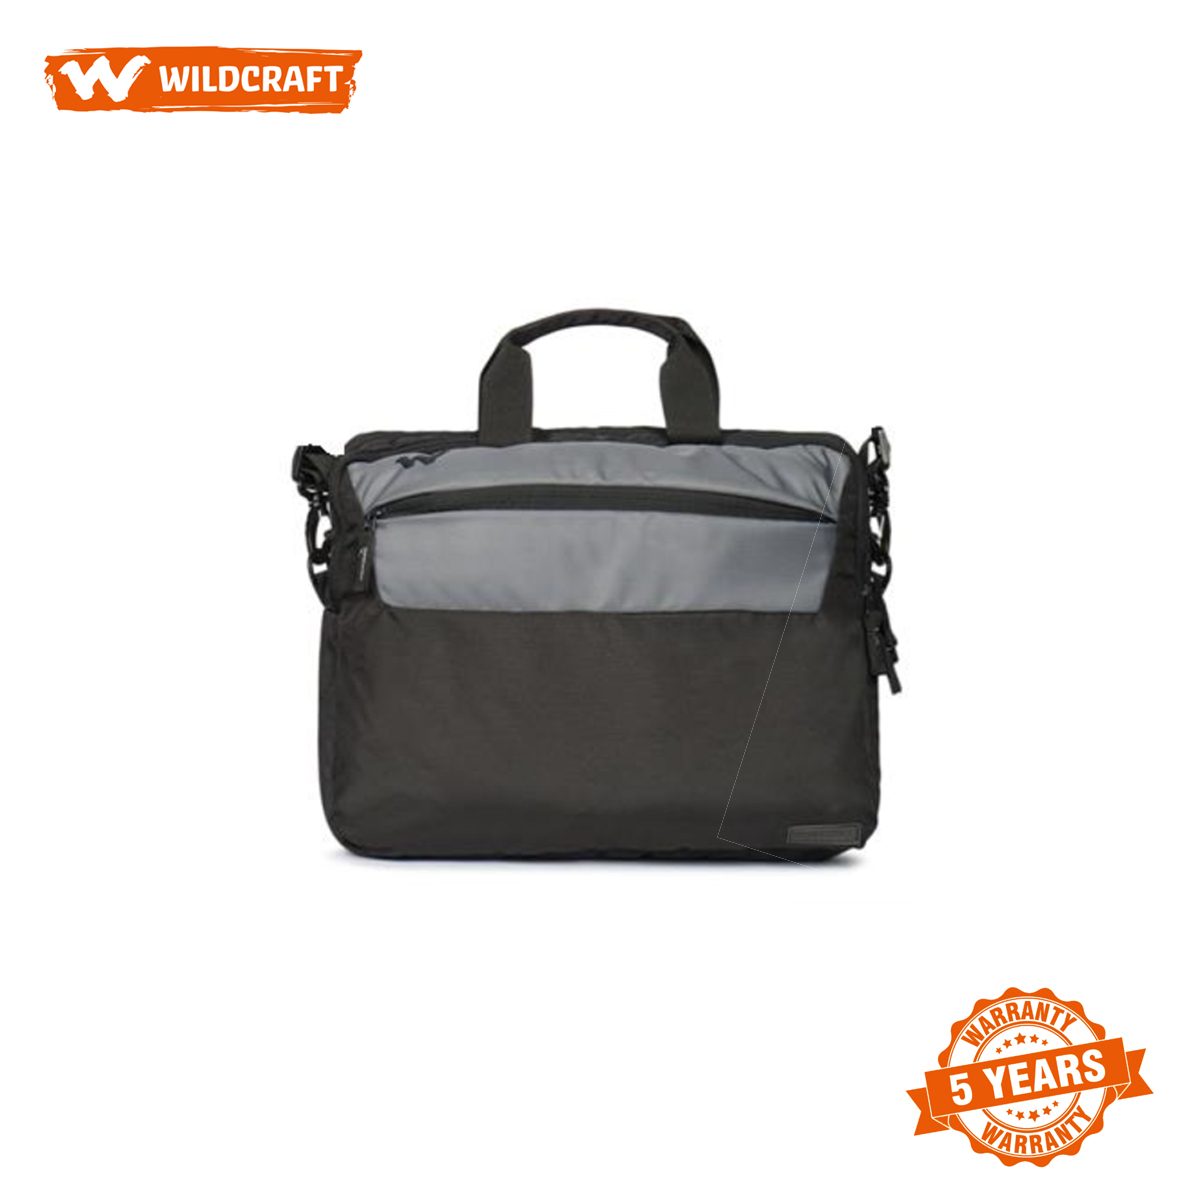 Wild Craft Black & Grey Laptop Messenger Bag